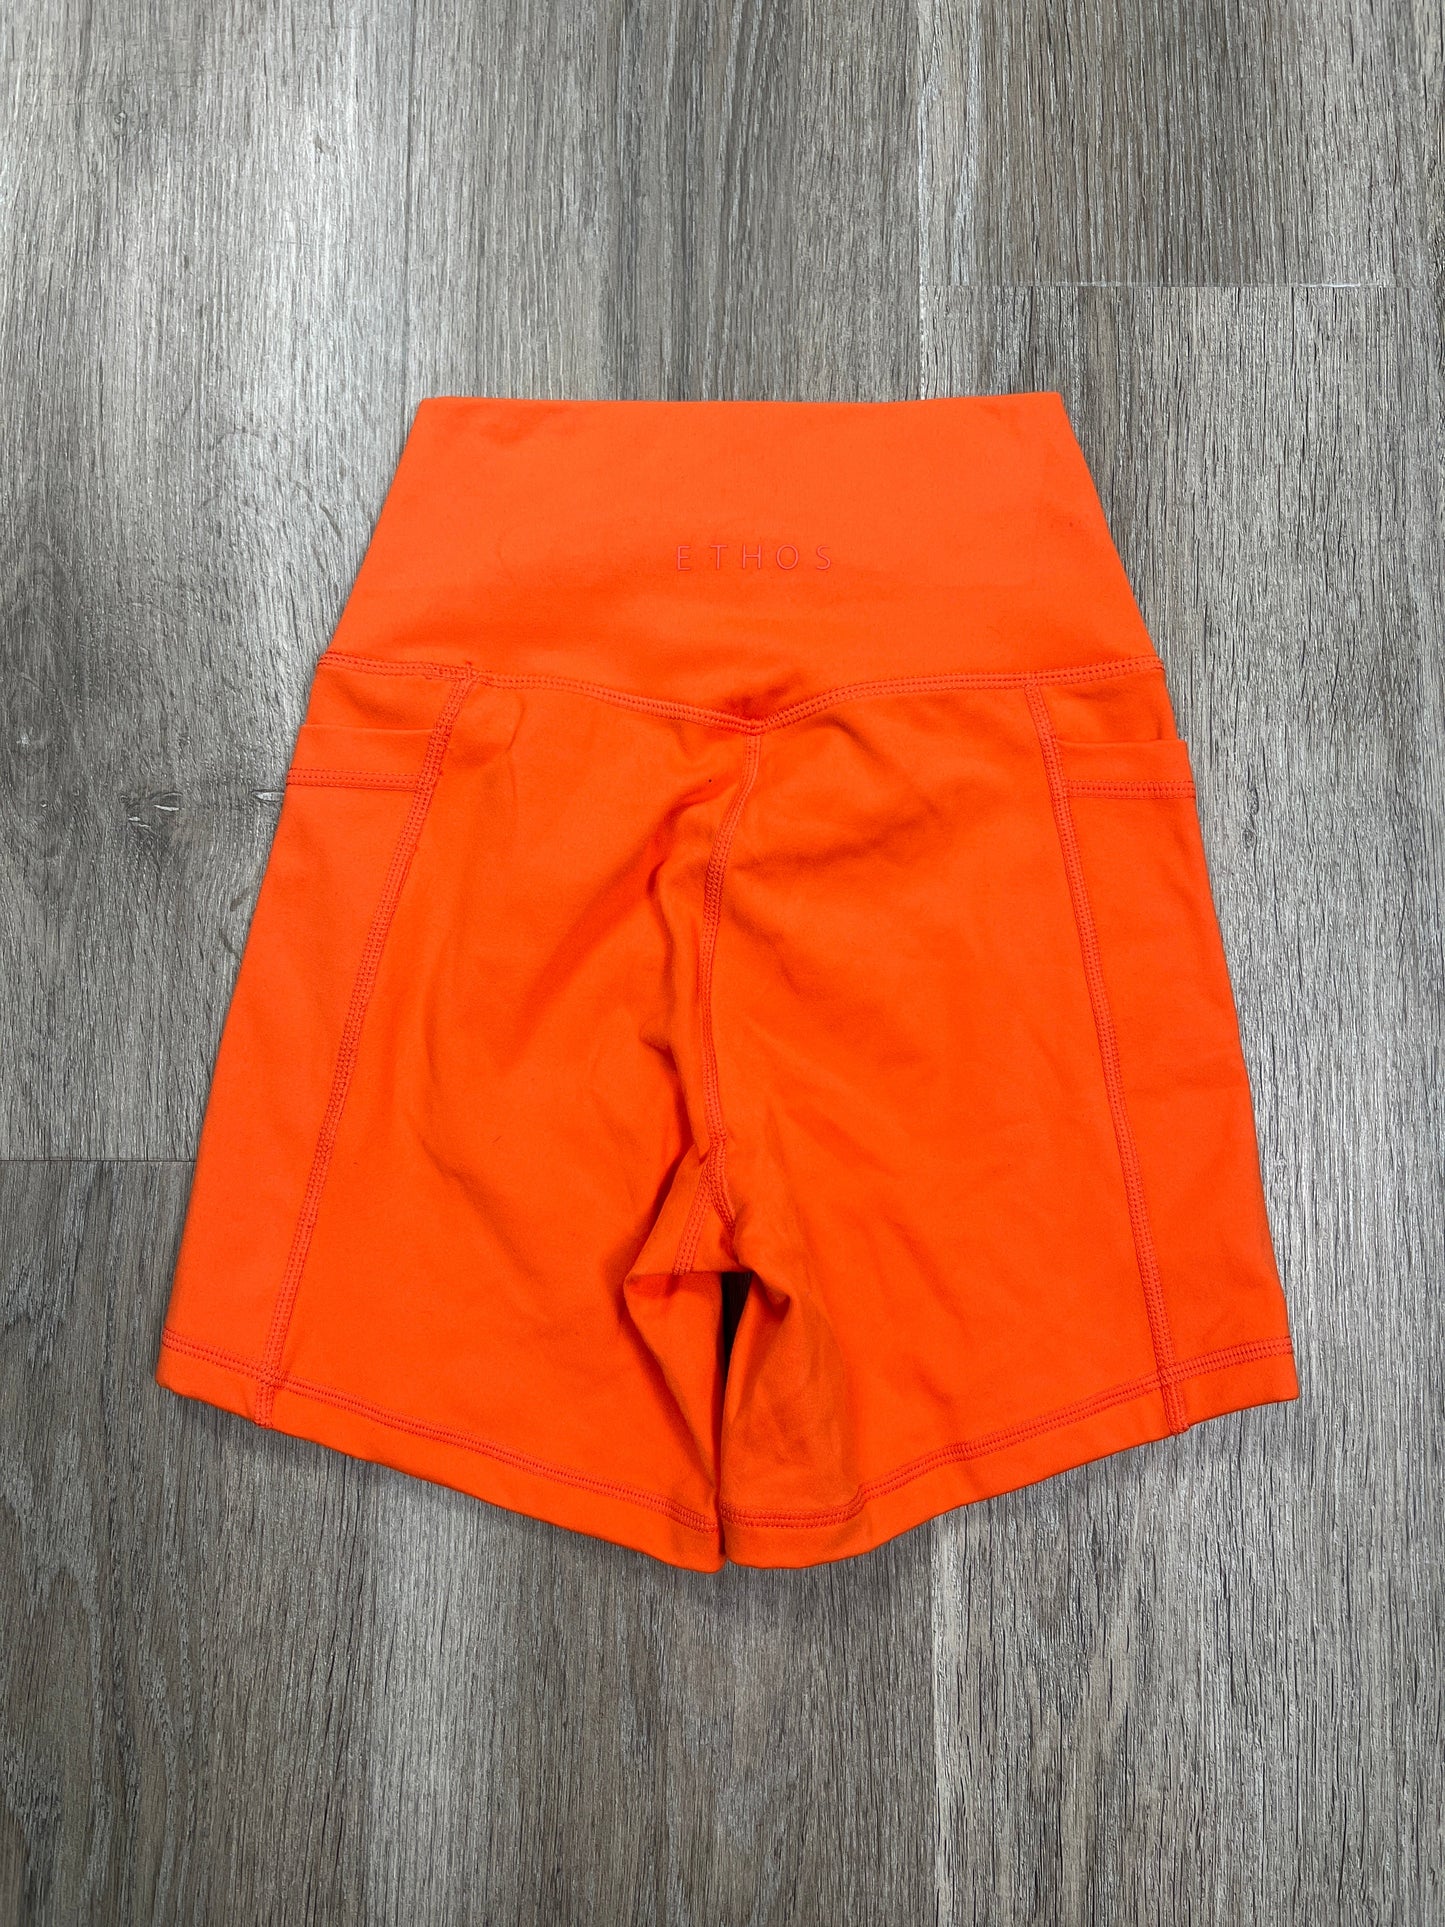 Orange Athletic Shorts Ethos, Size Xxs